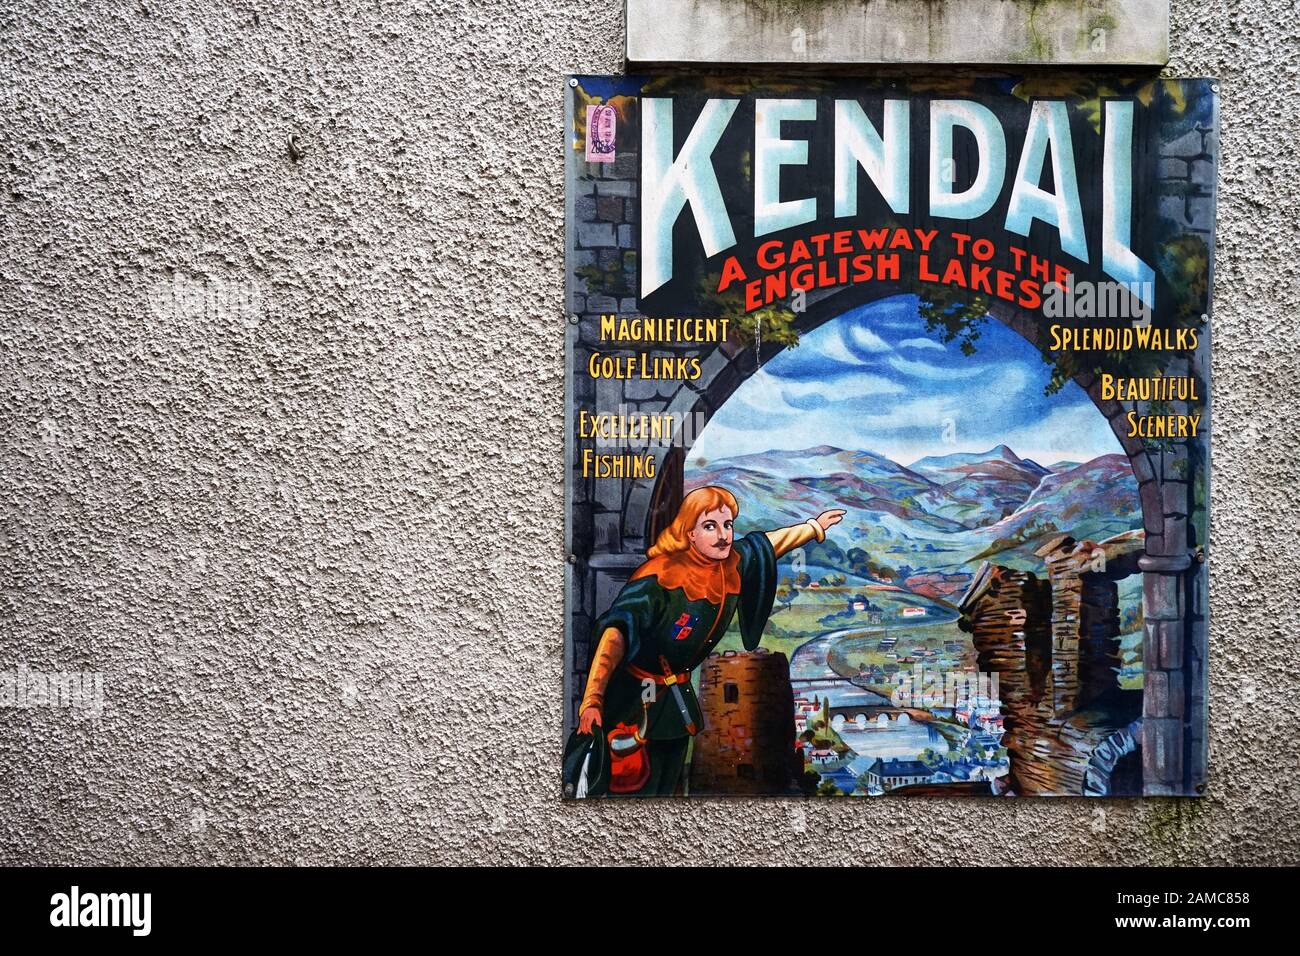 Altmodisches Touristeninformationsschild an einer Wand, das "Kendal, ein Tor zu den englischen Seen" wirbt Stockfoto